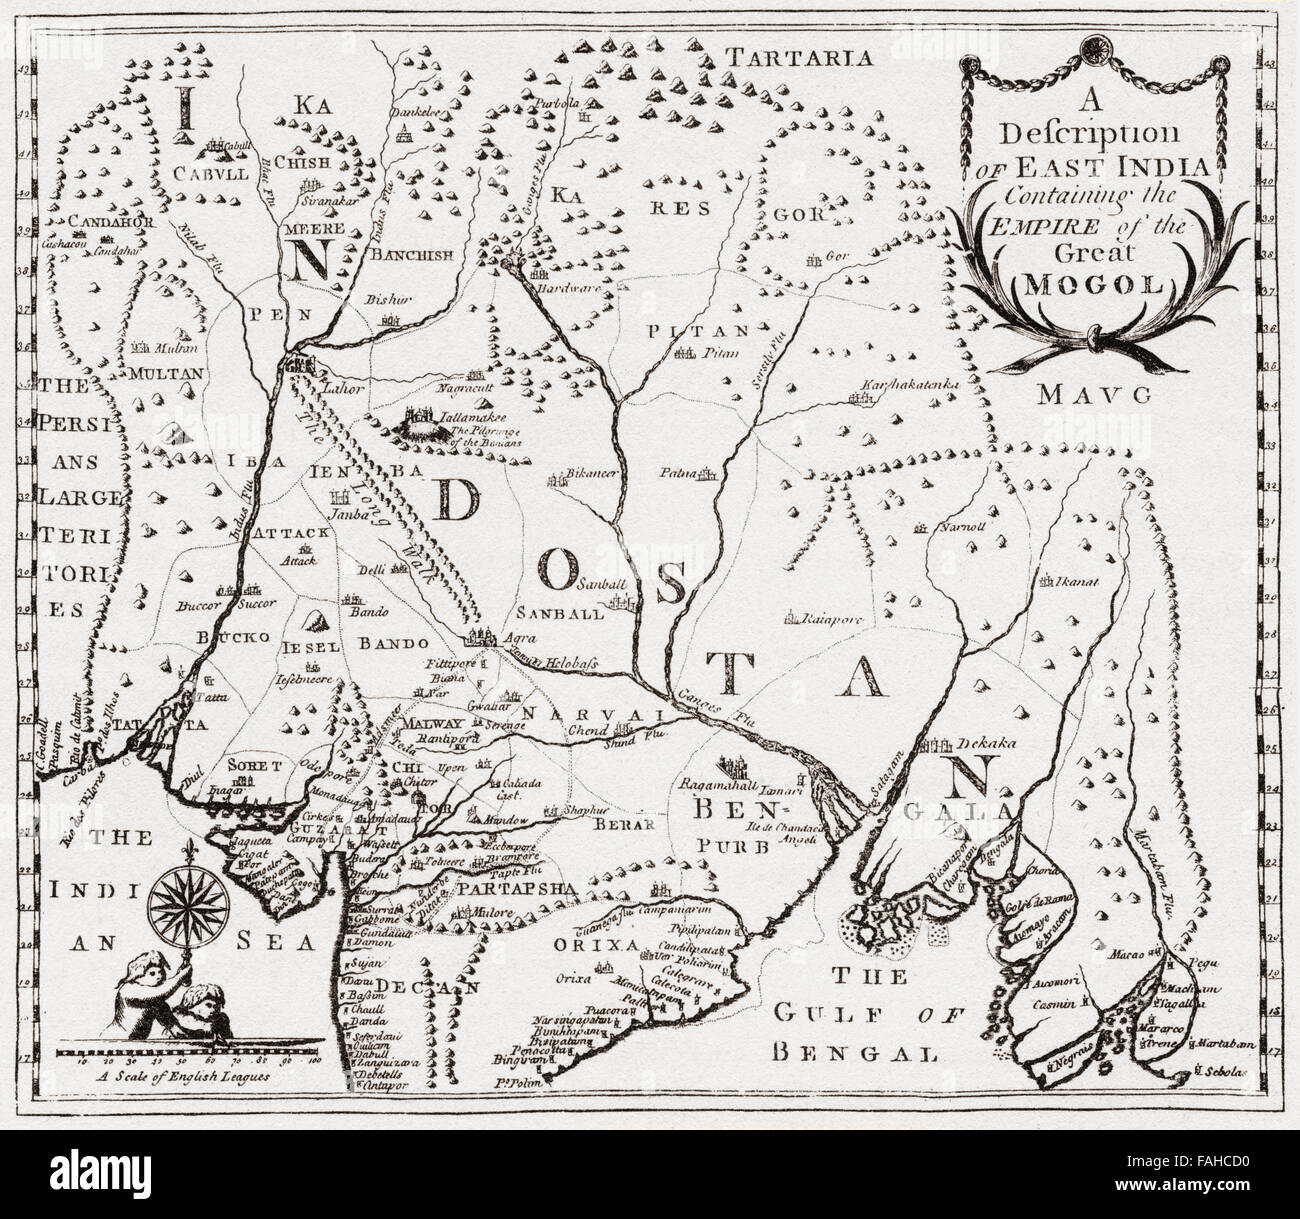 Carte montrant les territoires dans l'Est de l'Inde de Nur-ud-din Mohammad Salim, connu sous son nom d'imperial Jahangir, 1569 -1627. Quatrième empereur Moghol. Après la gravure de Edward Terry's Voyage à Est de l'Inde, 1655. Banque D'Images